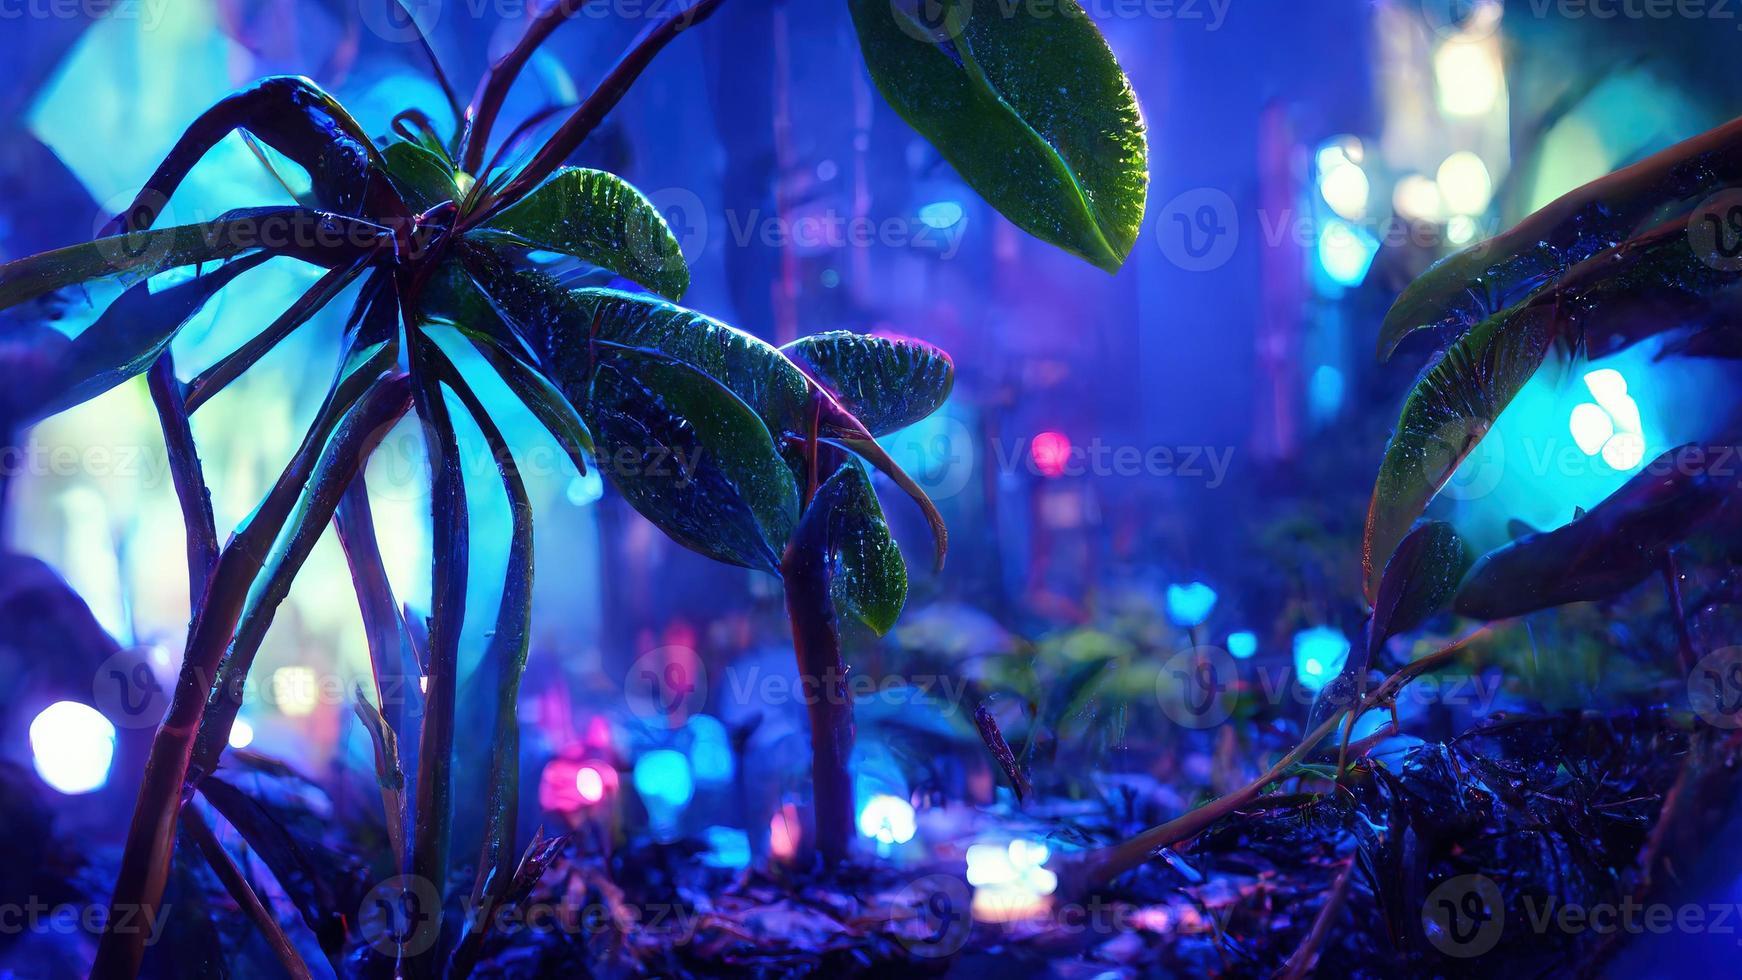 blue jungle neon night. Abstract illustration art photo